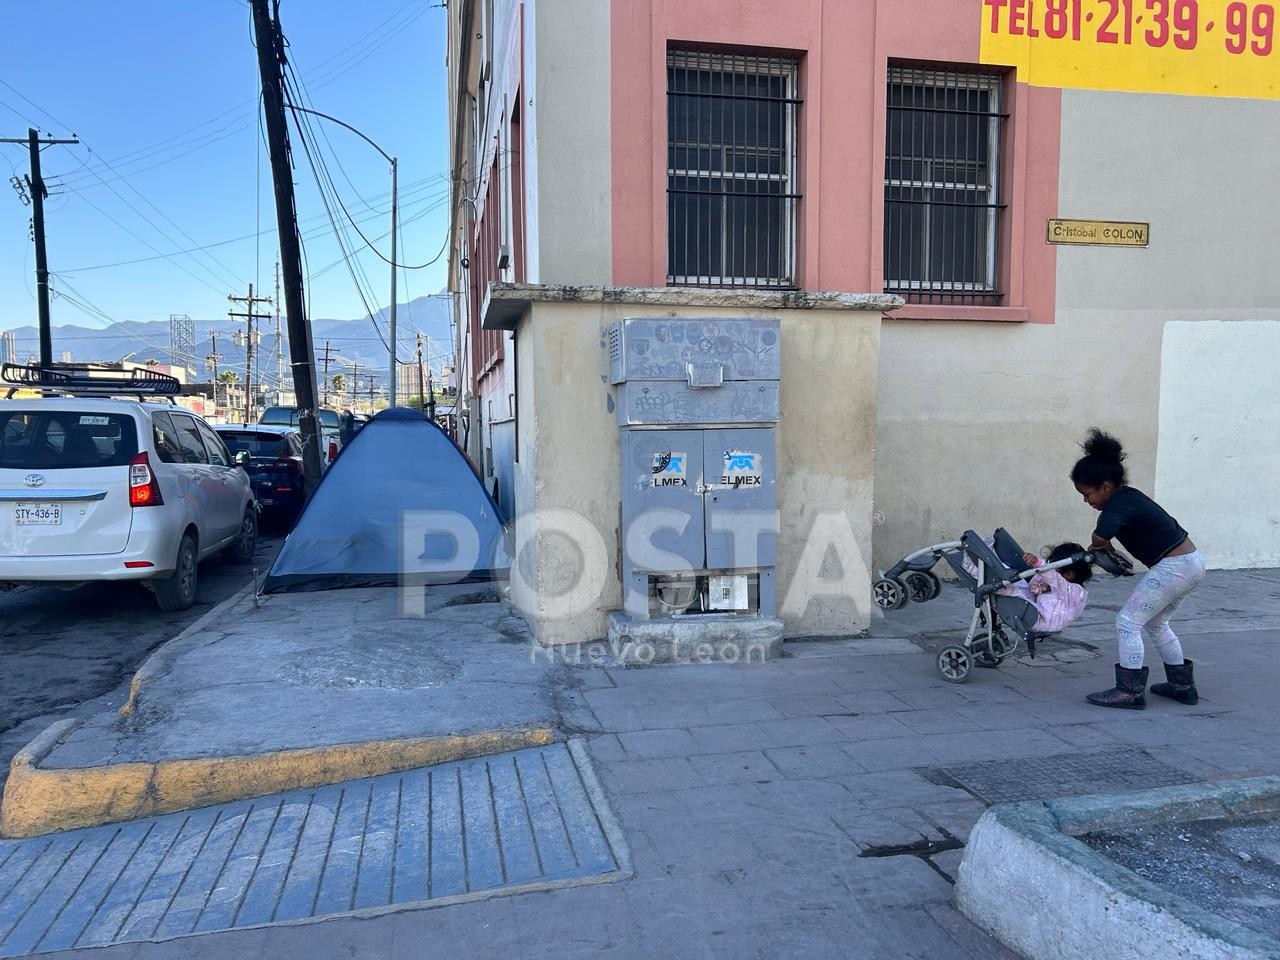 Acampa familia ecuatoriana en calles de Monterrey; buscan el sueño americano